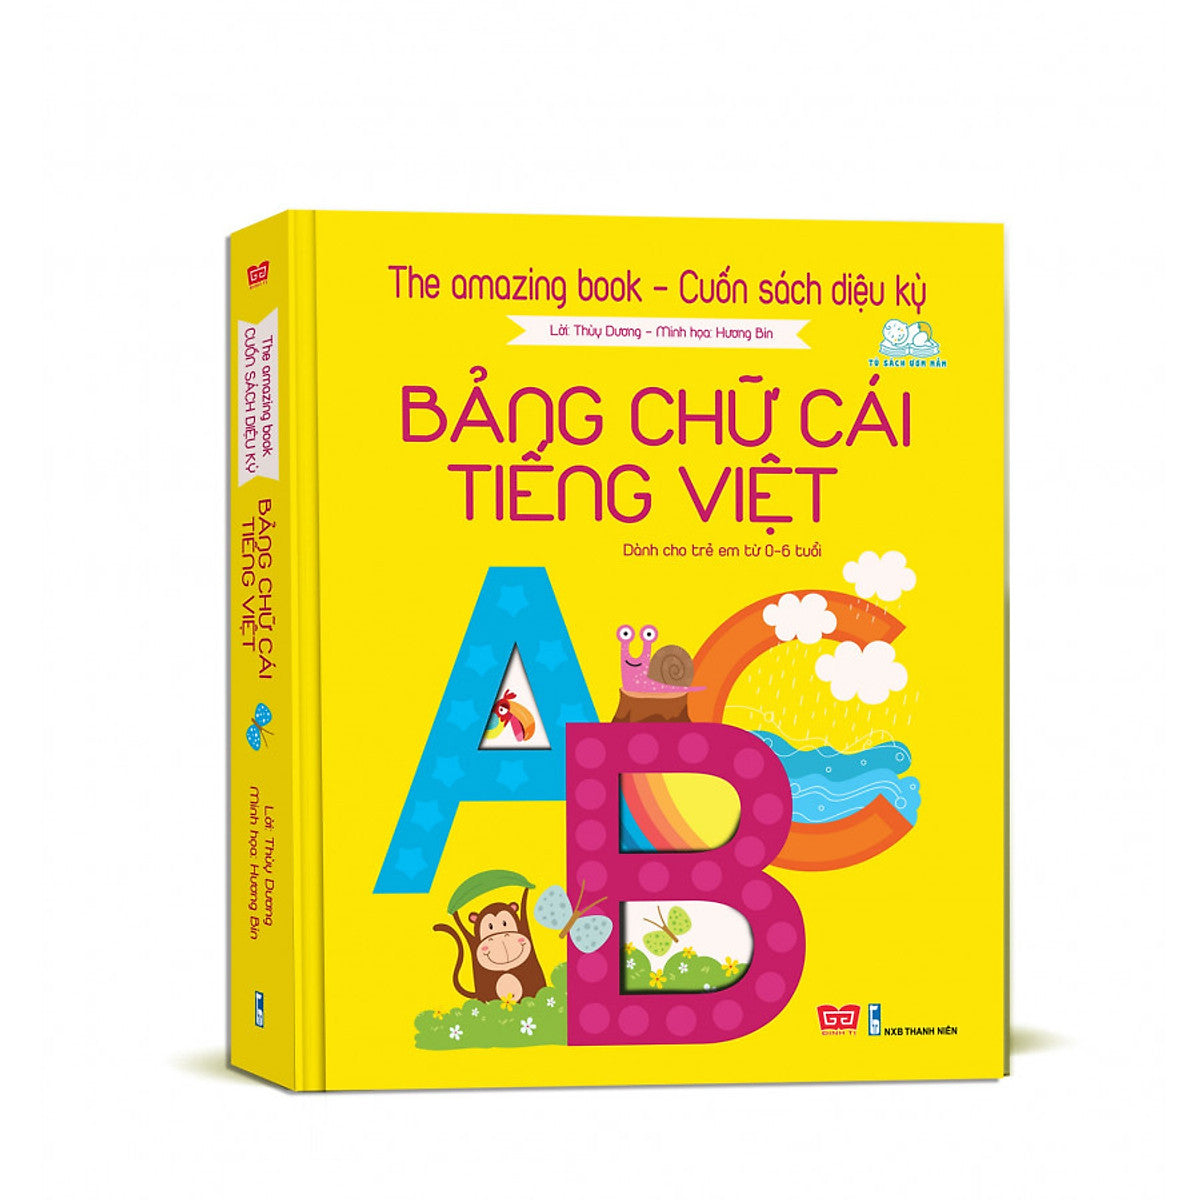 The Amazing Book - Cuốn Sách Diệu Kì - Bảng Chữ Cái Tiếng Việt